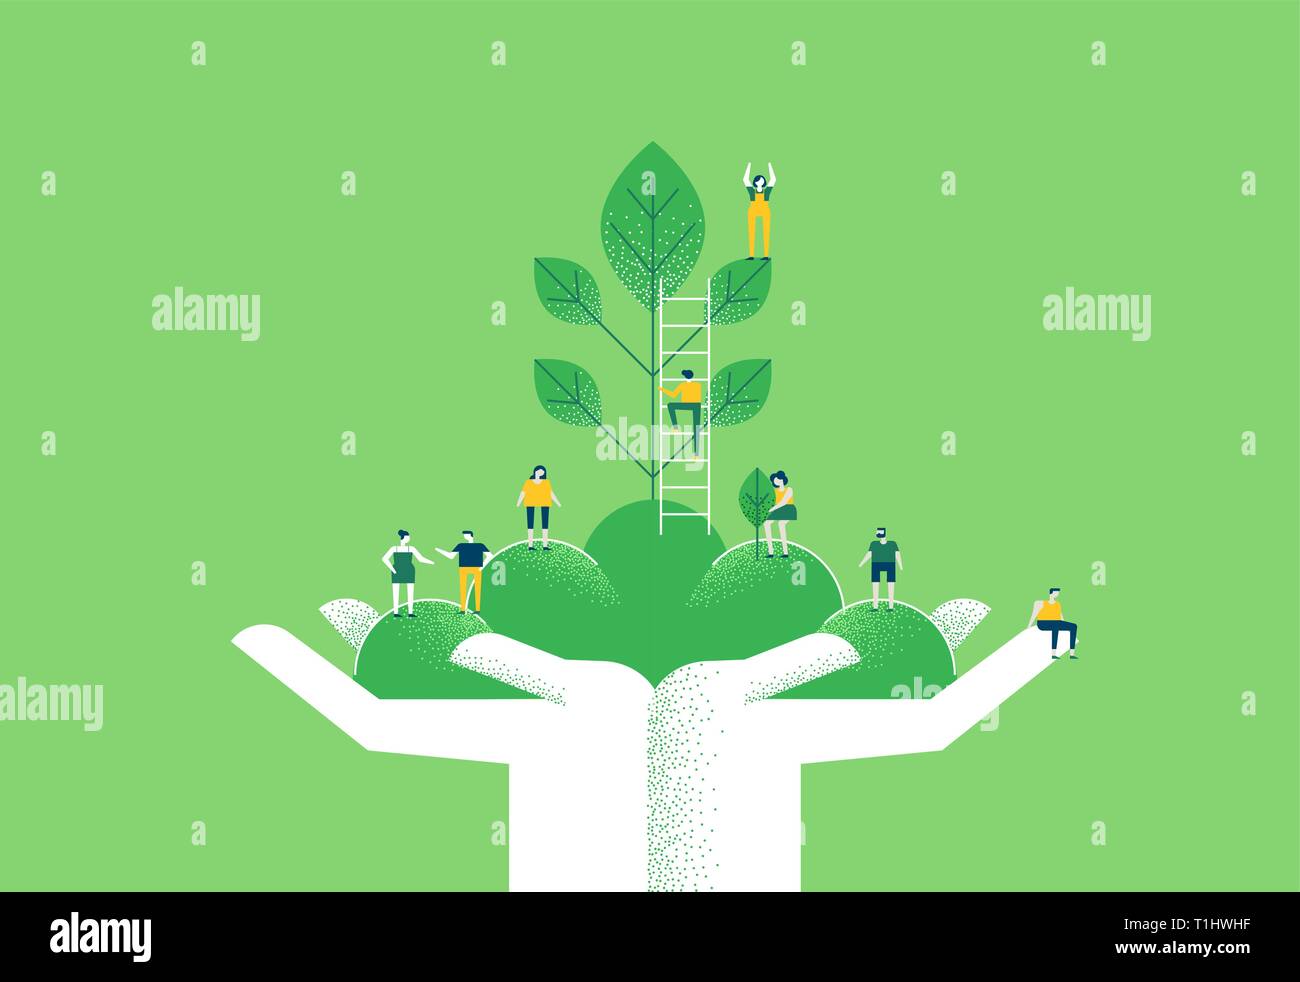 Menschliche Hände mit kleinen Menschen team und grüne Pflanze Blätter für umweltfreundliche Umwelt Care Concept oder sozialen Bewusstsein Abbildung. Stock Vektor